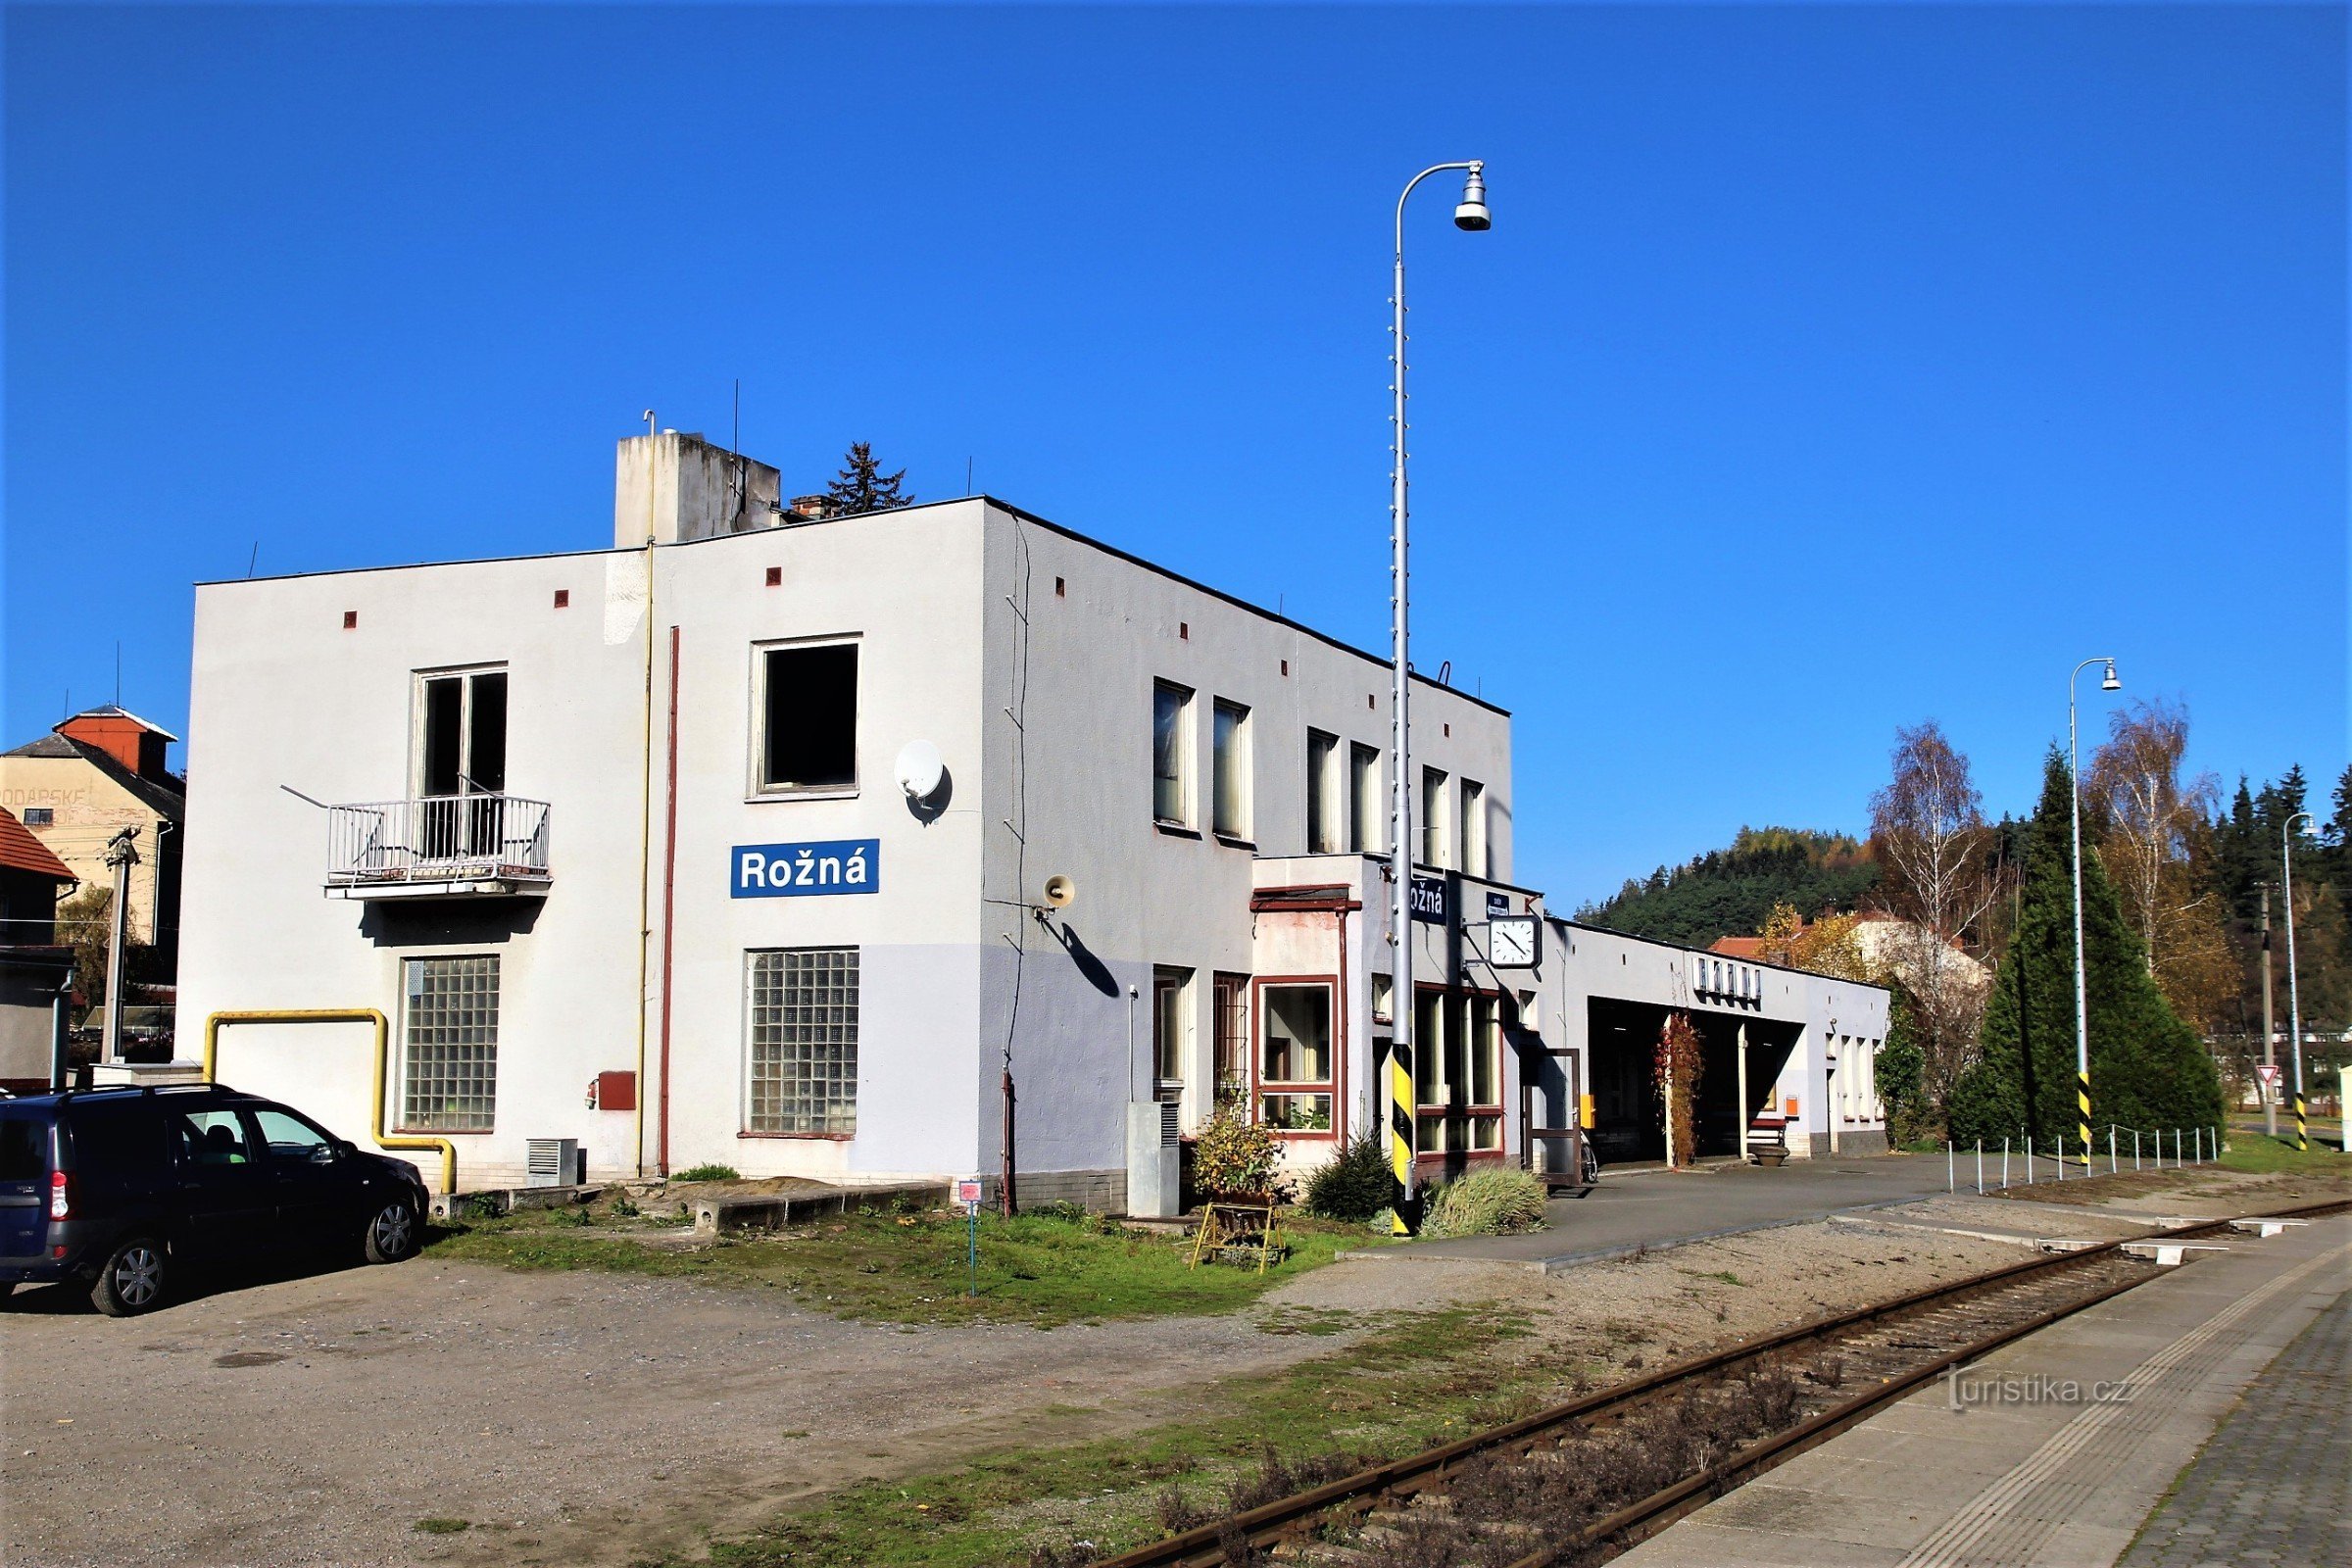 Rožná - station building